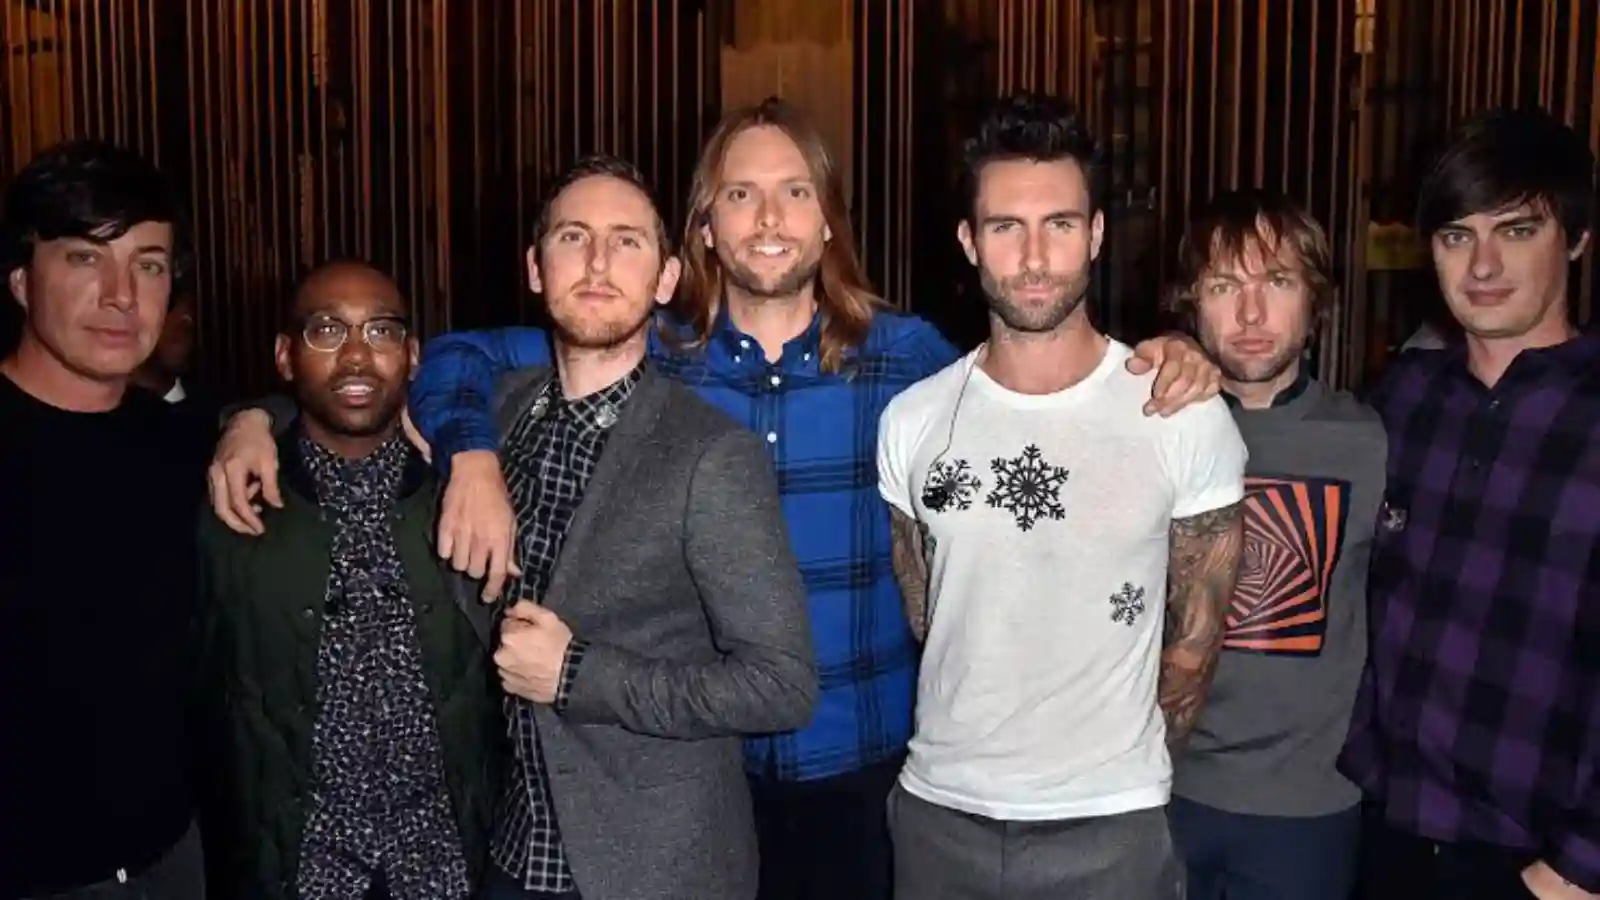 Meet the band 'Maroon 5'